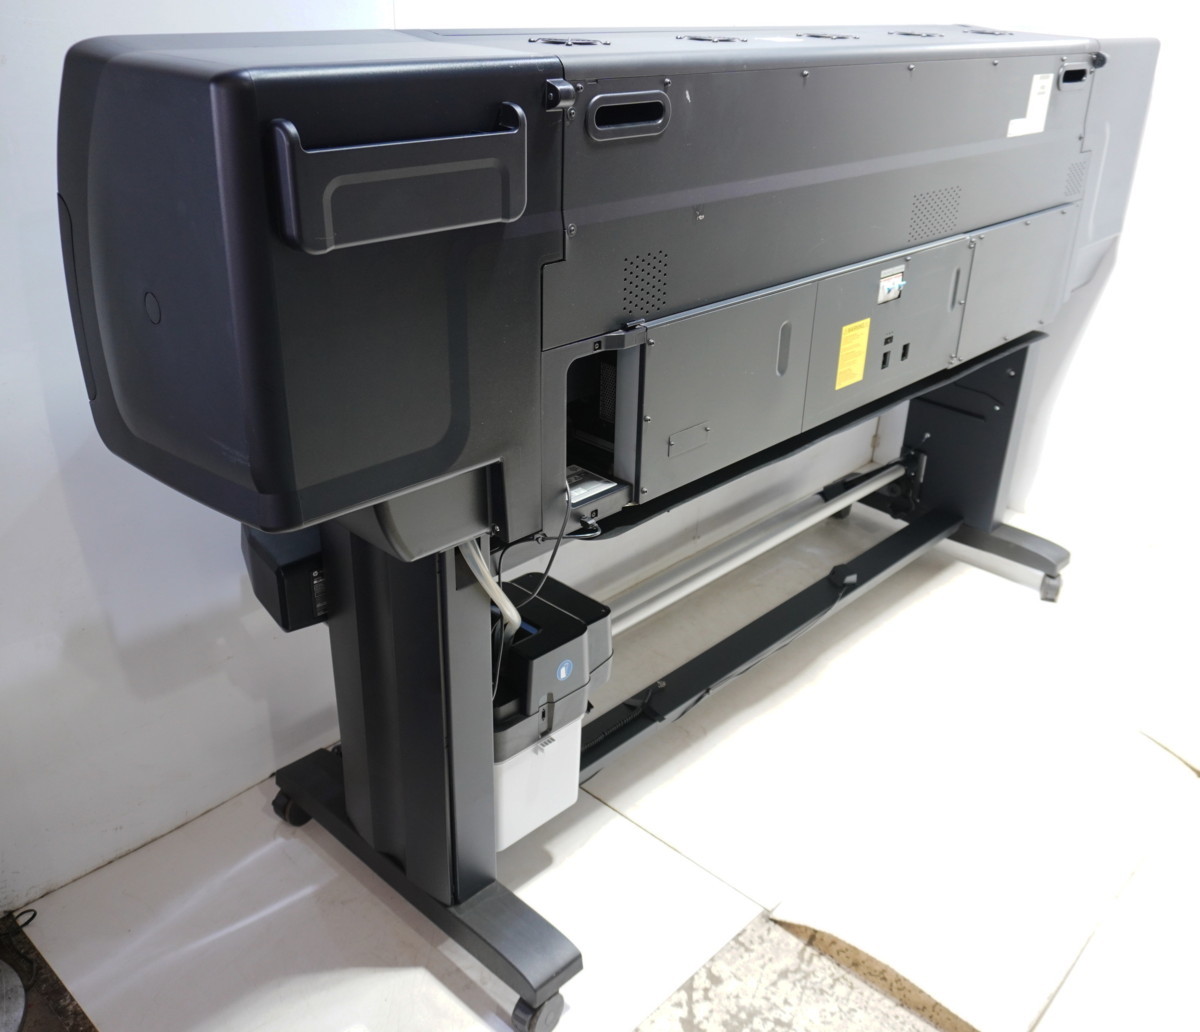  прямой * Chiba префектура HP Latex260 Designjet L26500 большой размер принтер *3Z-996